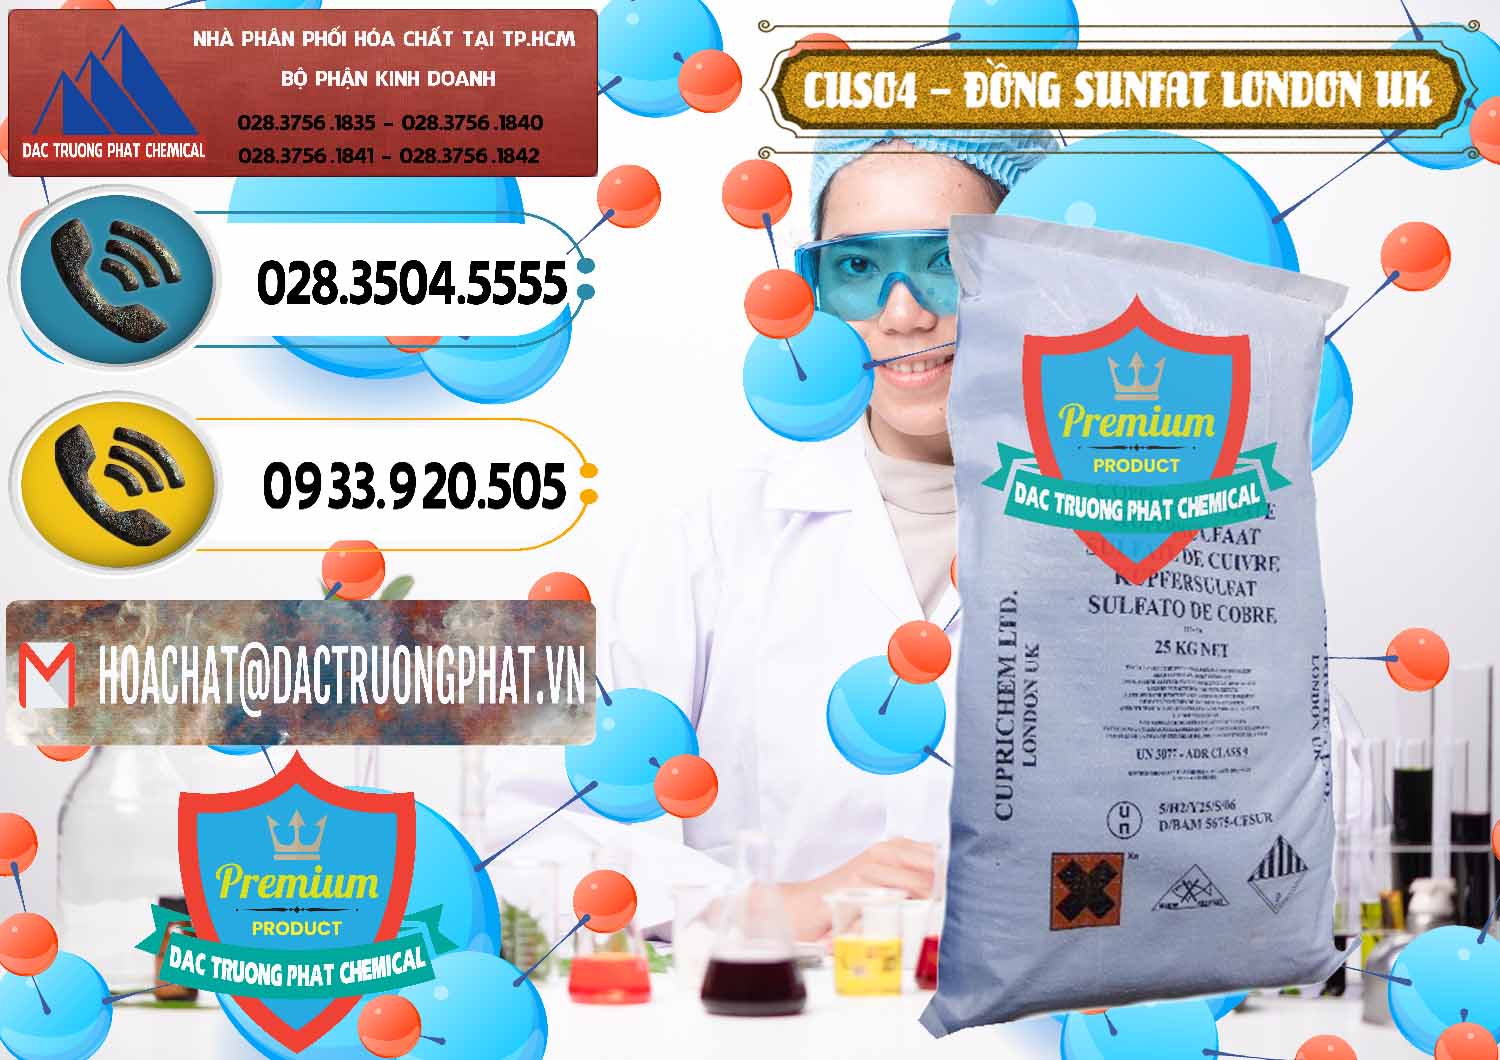 Đơn vị chuyên kinh doanh ( bán ) CuSO4 – Đồng Sunfat Anh Uk Kingdoms - 0478 - Nơi chuyên nhập khẩu và phân phối hóa chất tại TP.HCM - hoachatdetnhuom.vn